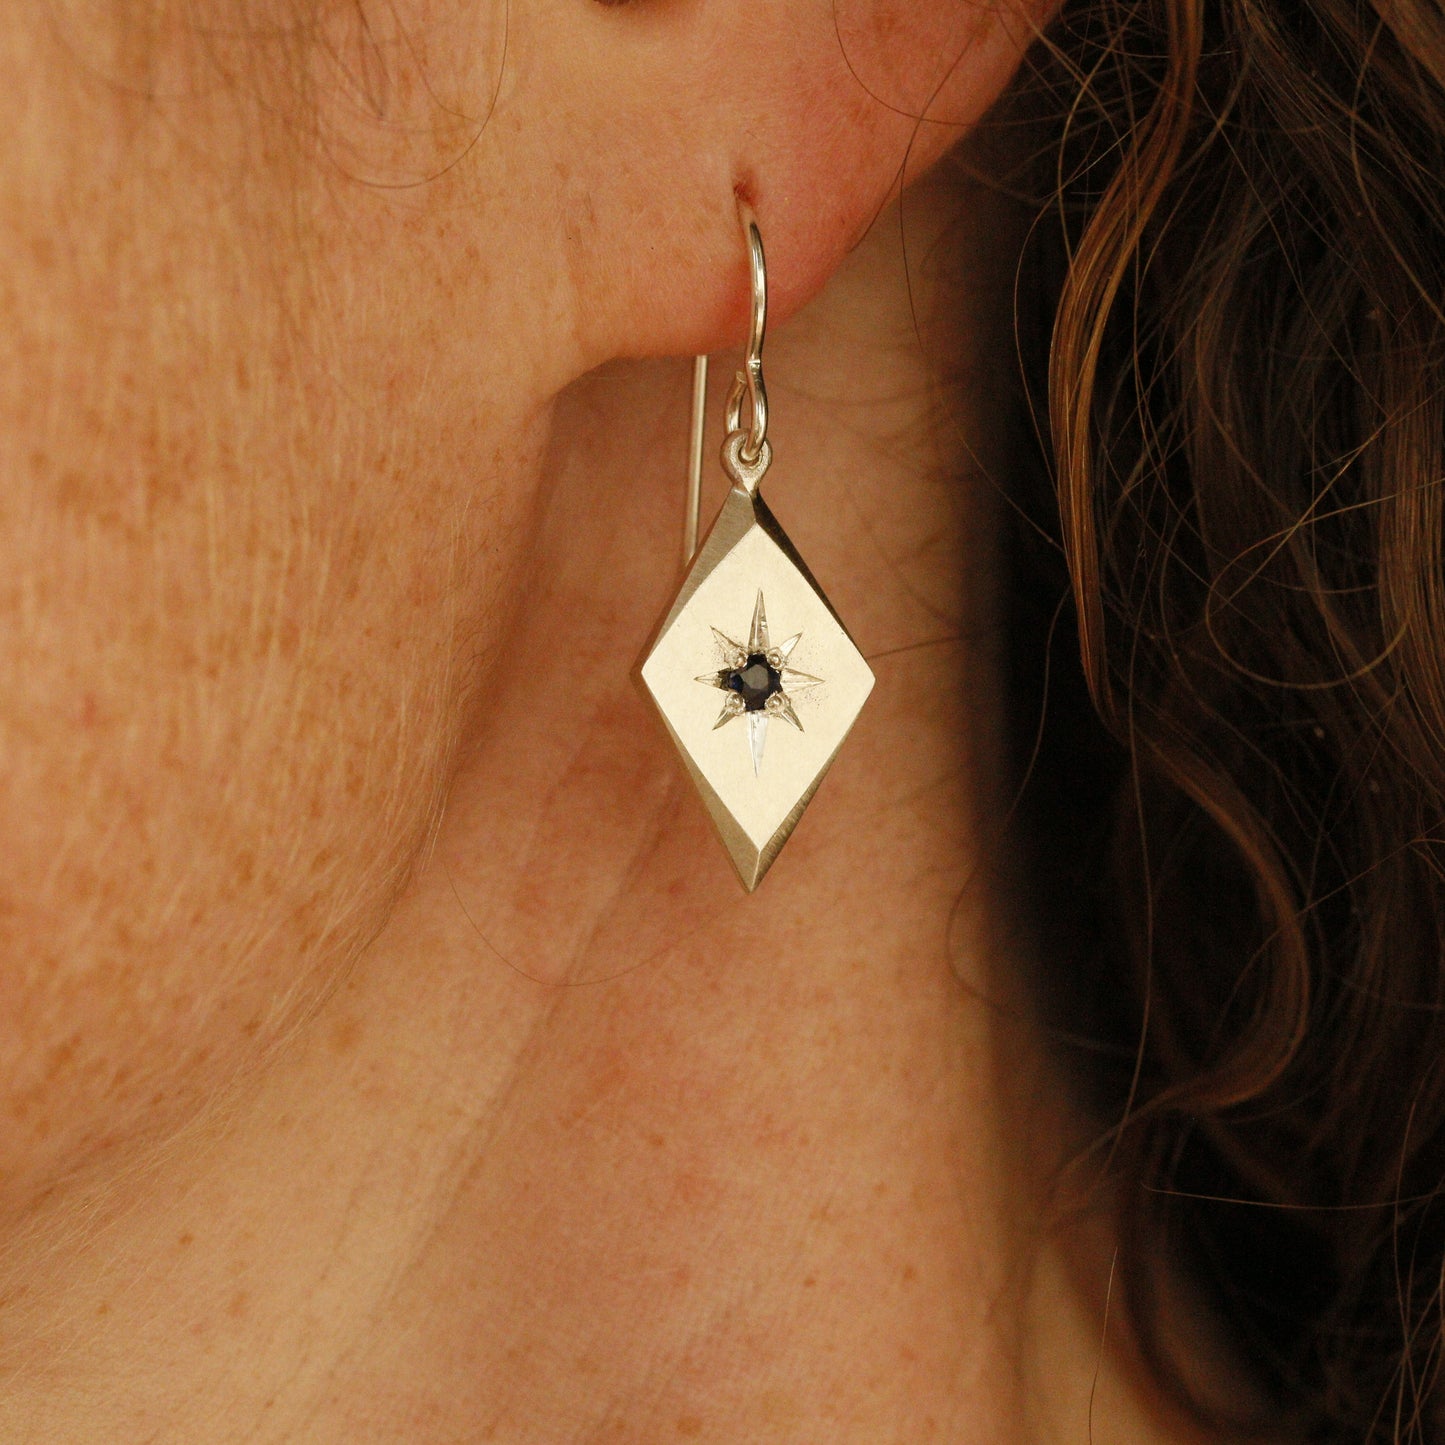 Guiding star earrings